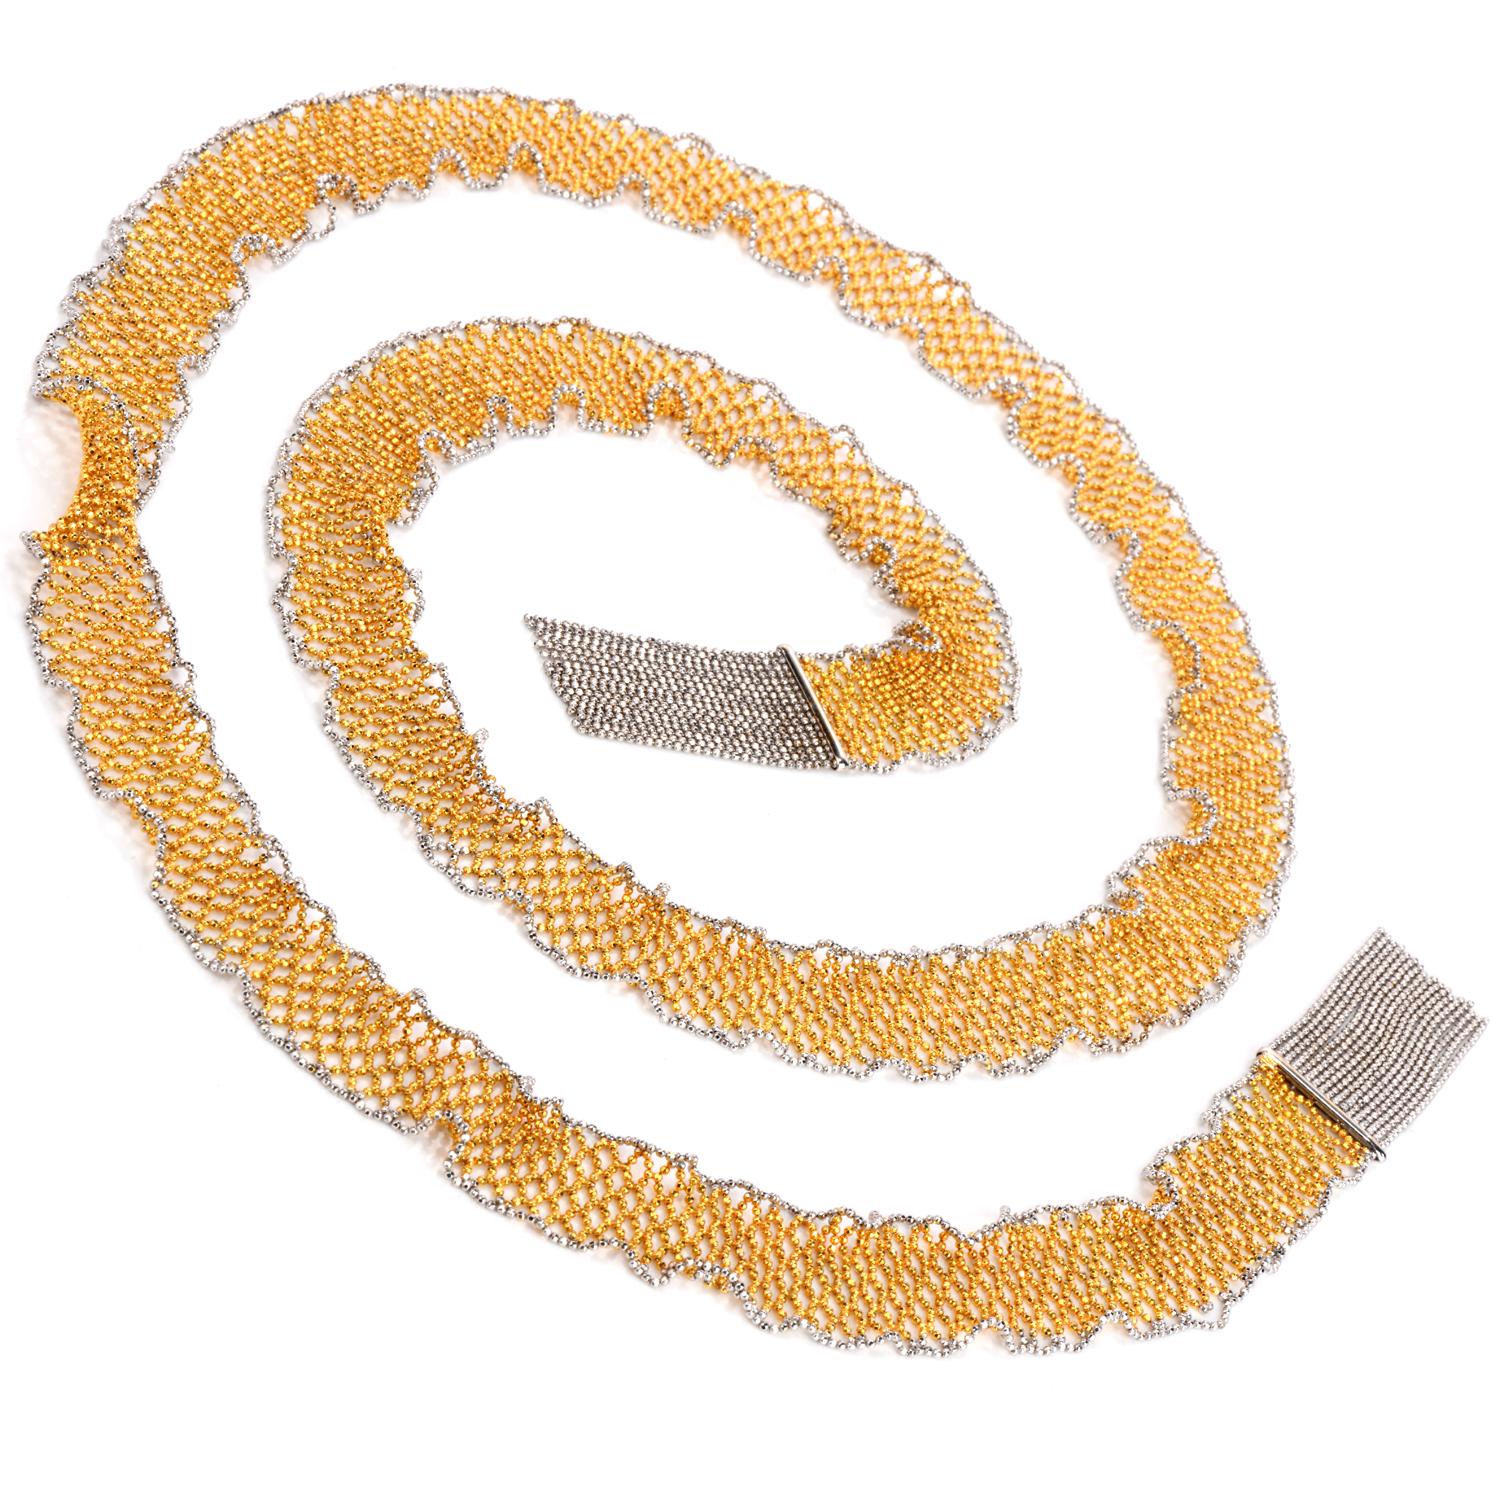 Ce collier extra long en forme d'écharpe en mailles de fabrication italienne est fabriqué en jaune massif de 18 carats avec des bordures en or blanc de 18 carats. 

Ce collier de perles à la mode est long de 41 pouces et large de 20 mm.

avec un